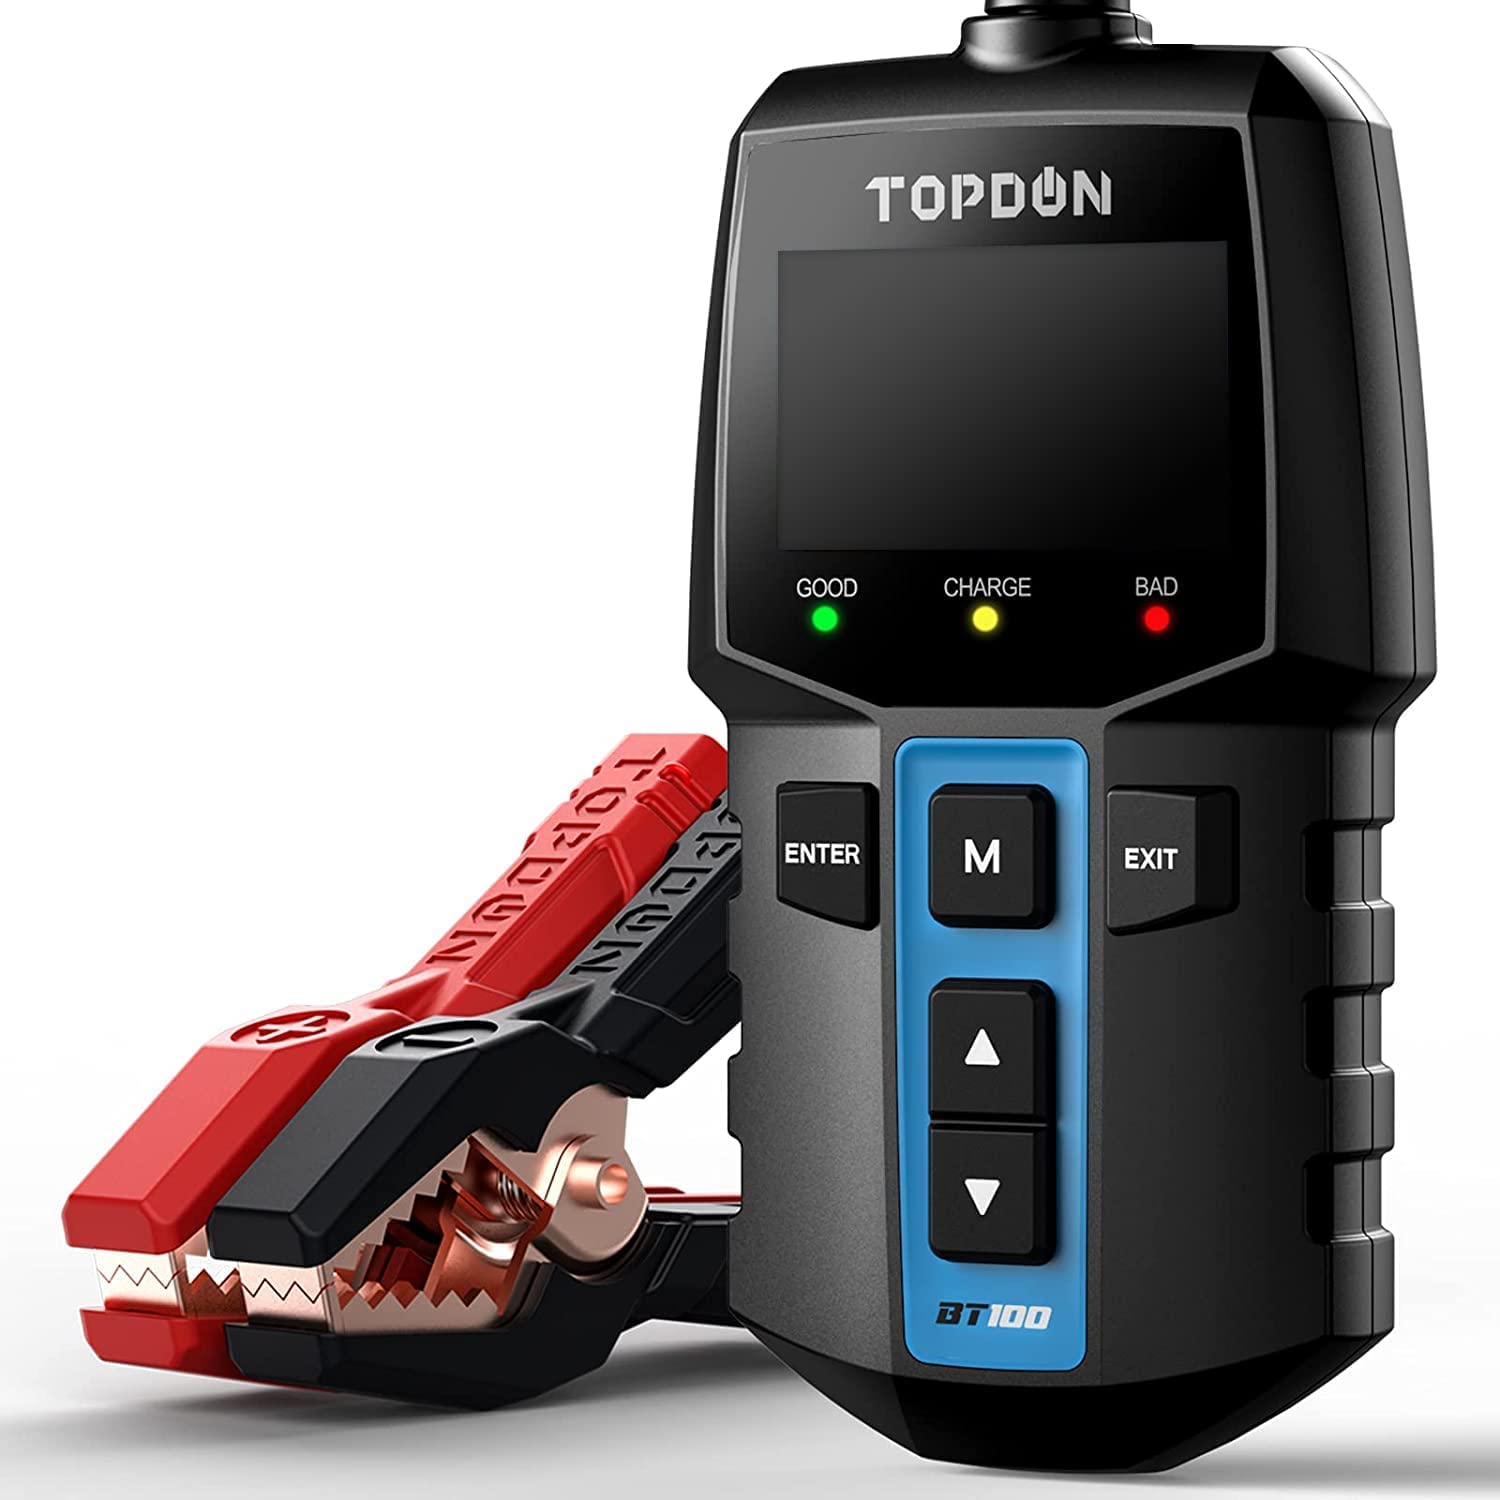 Topdon Car Battery Tester Topdon BT100 12V Load Tester, 100-2000 CCA Automotive Alternator Analyzer Charging Cranking System Tester